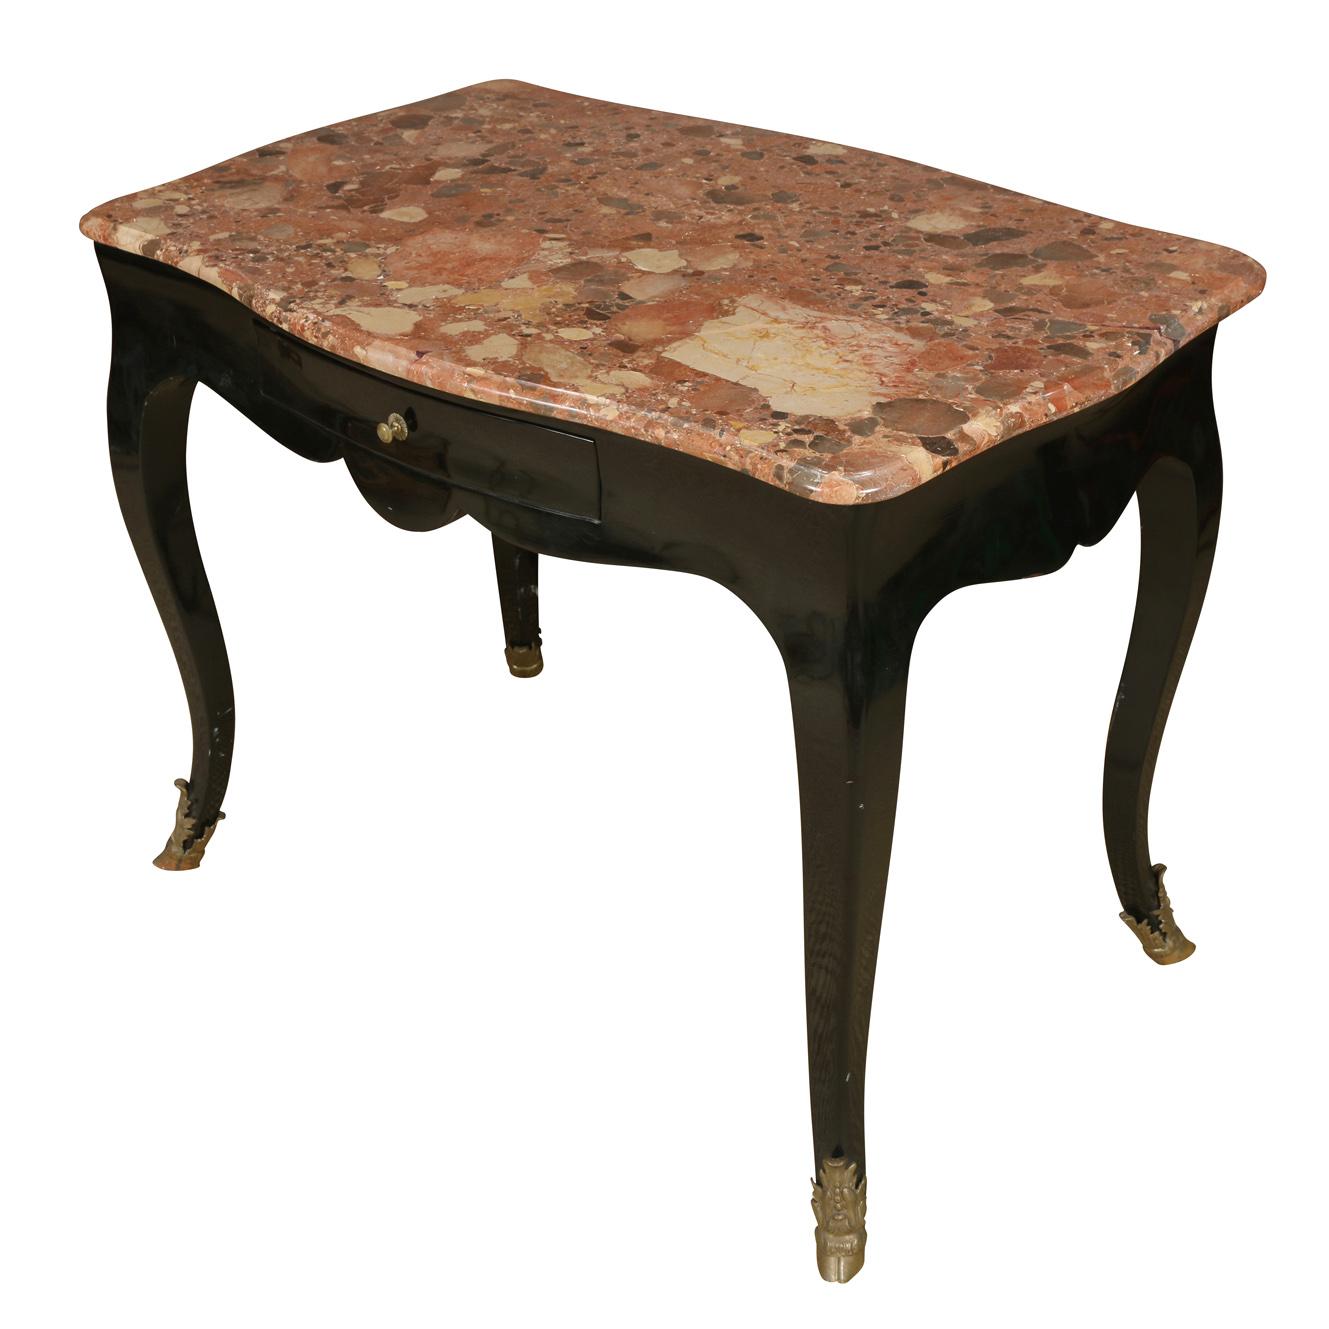 Ebonisierter antiker französischer Schreibtisch mit einer Platte aus Korallenmarmor, einer einzelnen Schublade und Cabriole-Beinen, die in Hufkappen aus Messing enden.